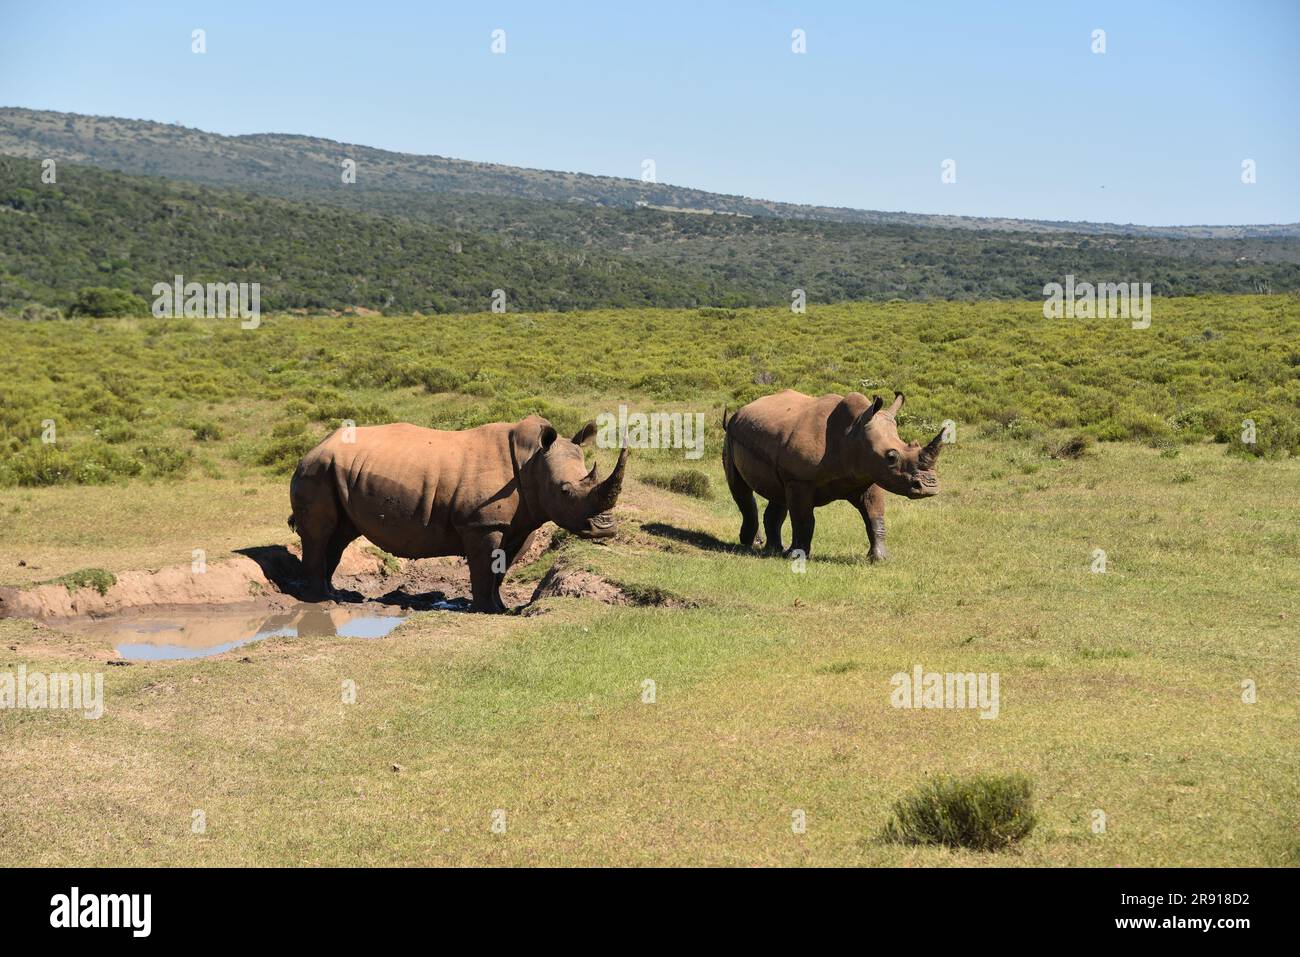 Gran formato cerca de dos rinocerontes salvajes, con grandes cuernos, cerca de un pozo de agua en la naturaleza sudafricana. Foto de stock